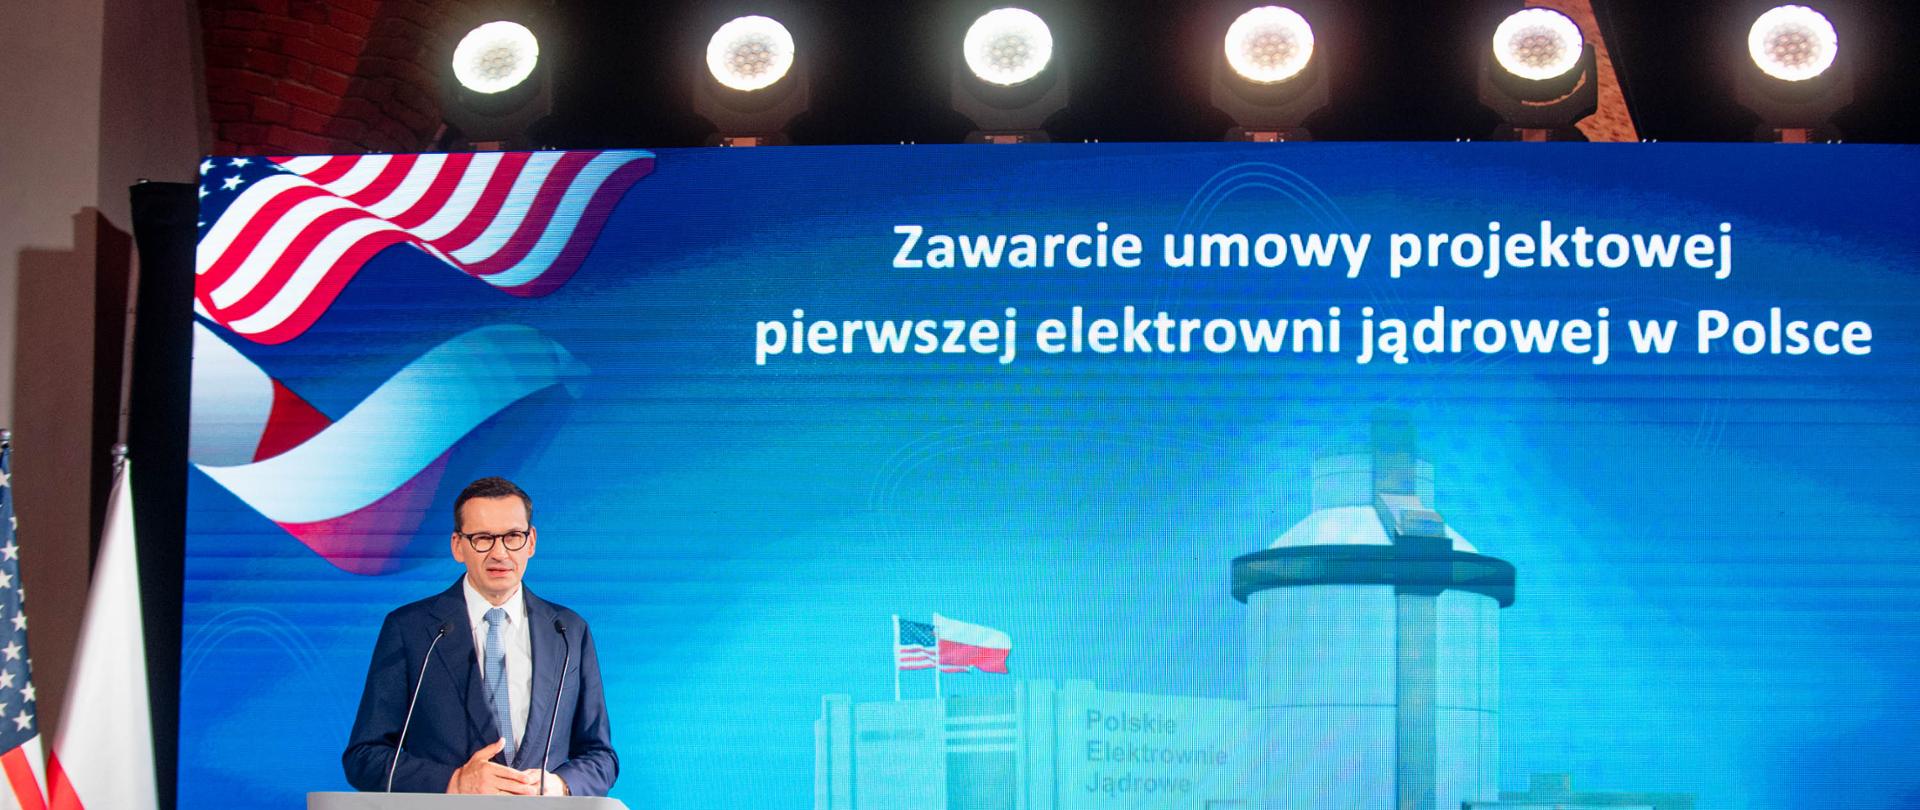 Premier Mateusz Morawiecki podczas wypowiedzi dla mediów w trakcie uroczystości podpisania umowy na budowę elektrowni atomowej w Polsce.